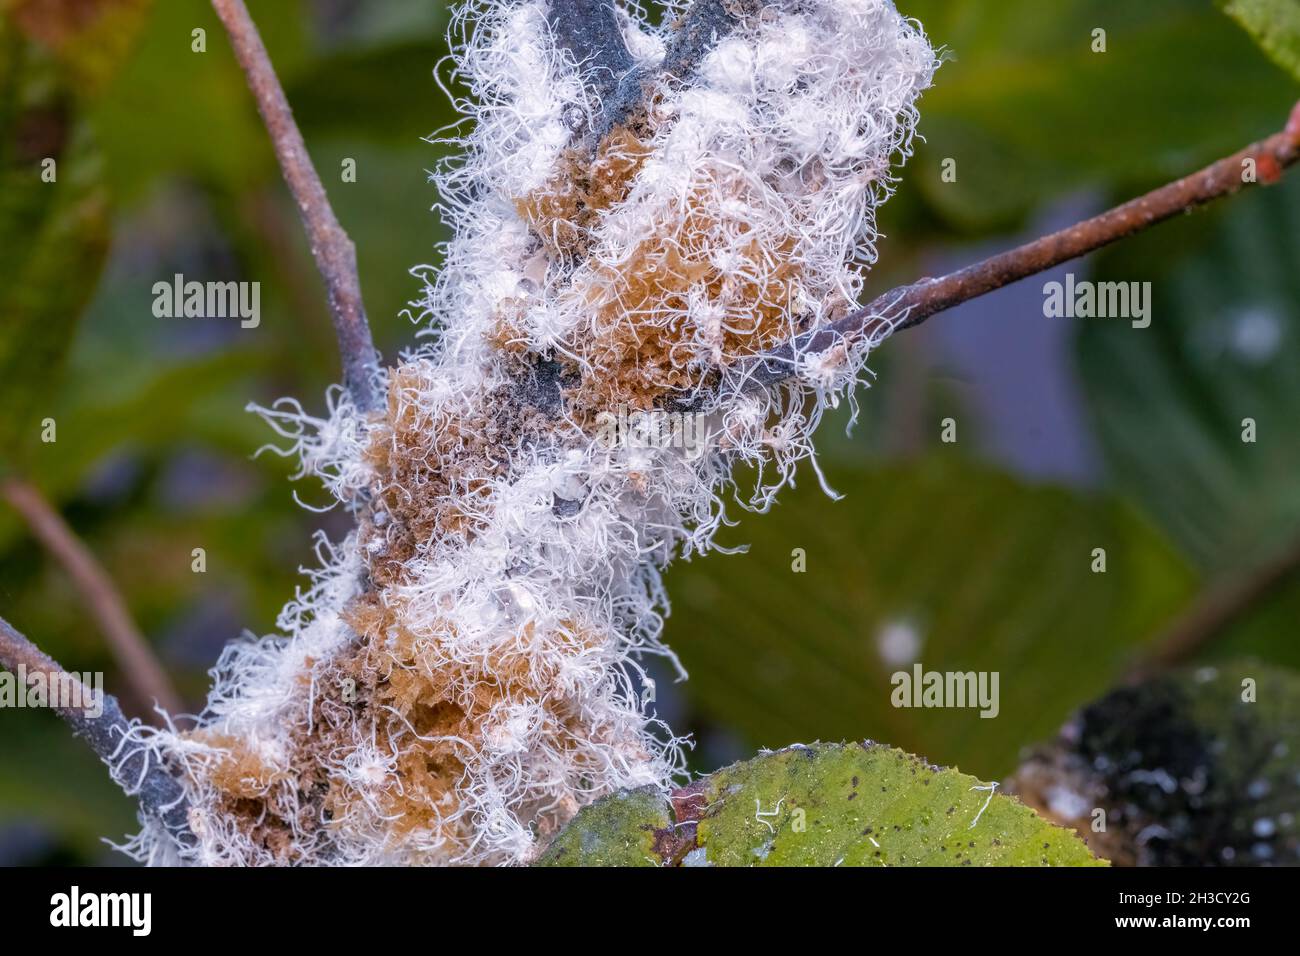 Nymphes de l'aulne laineux (Prociphilus tessellatus).Raleigh, Caroline du Nord. Banque D'Images